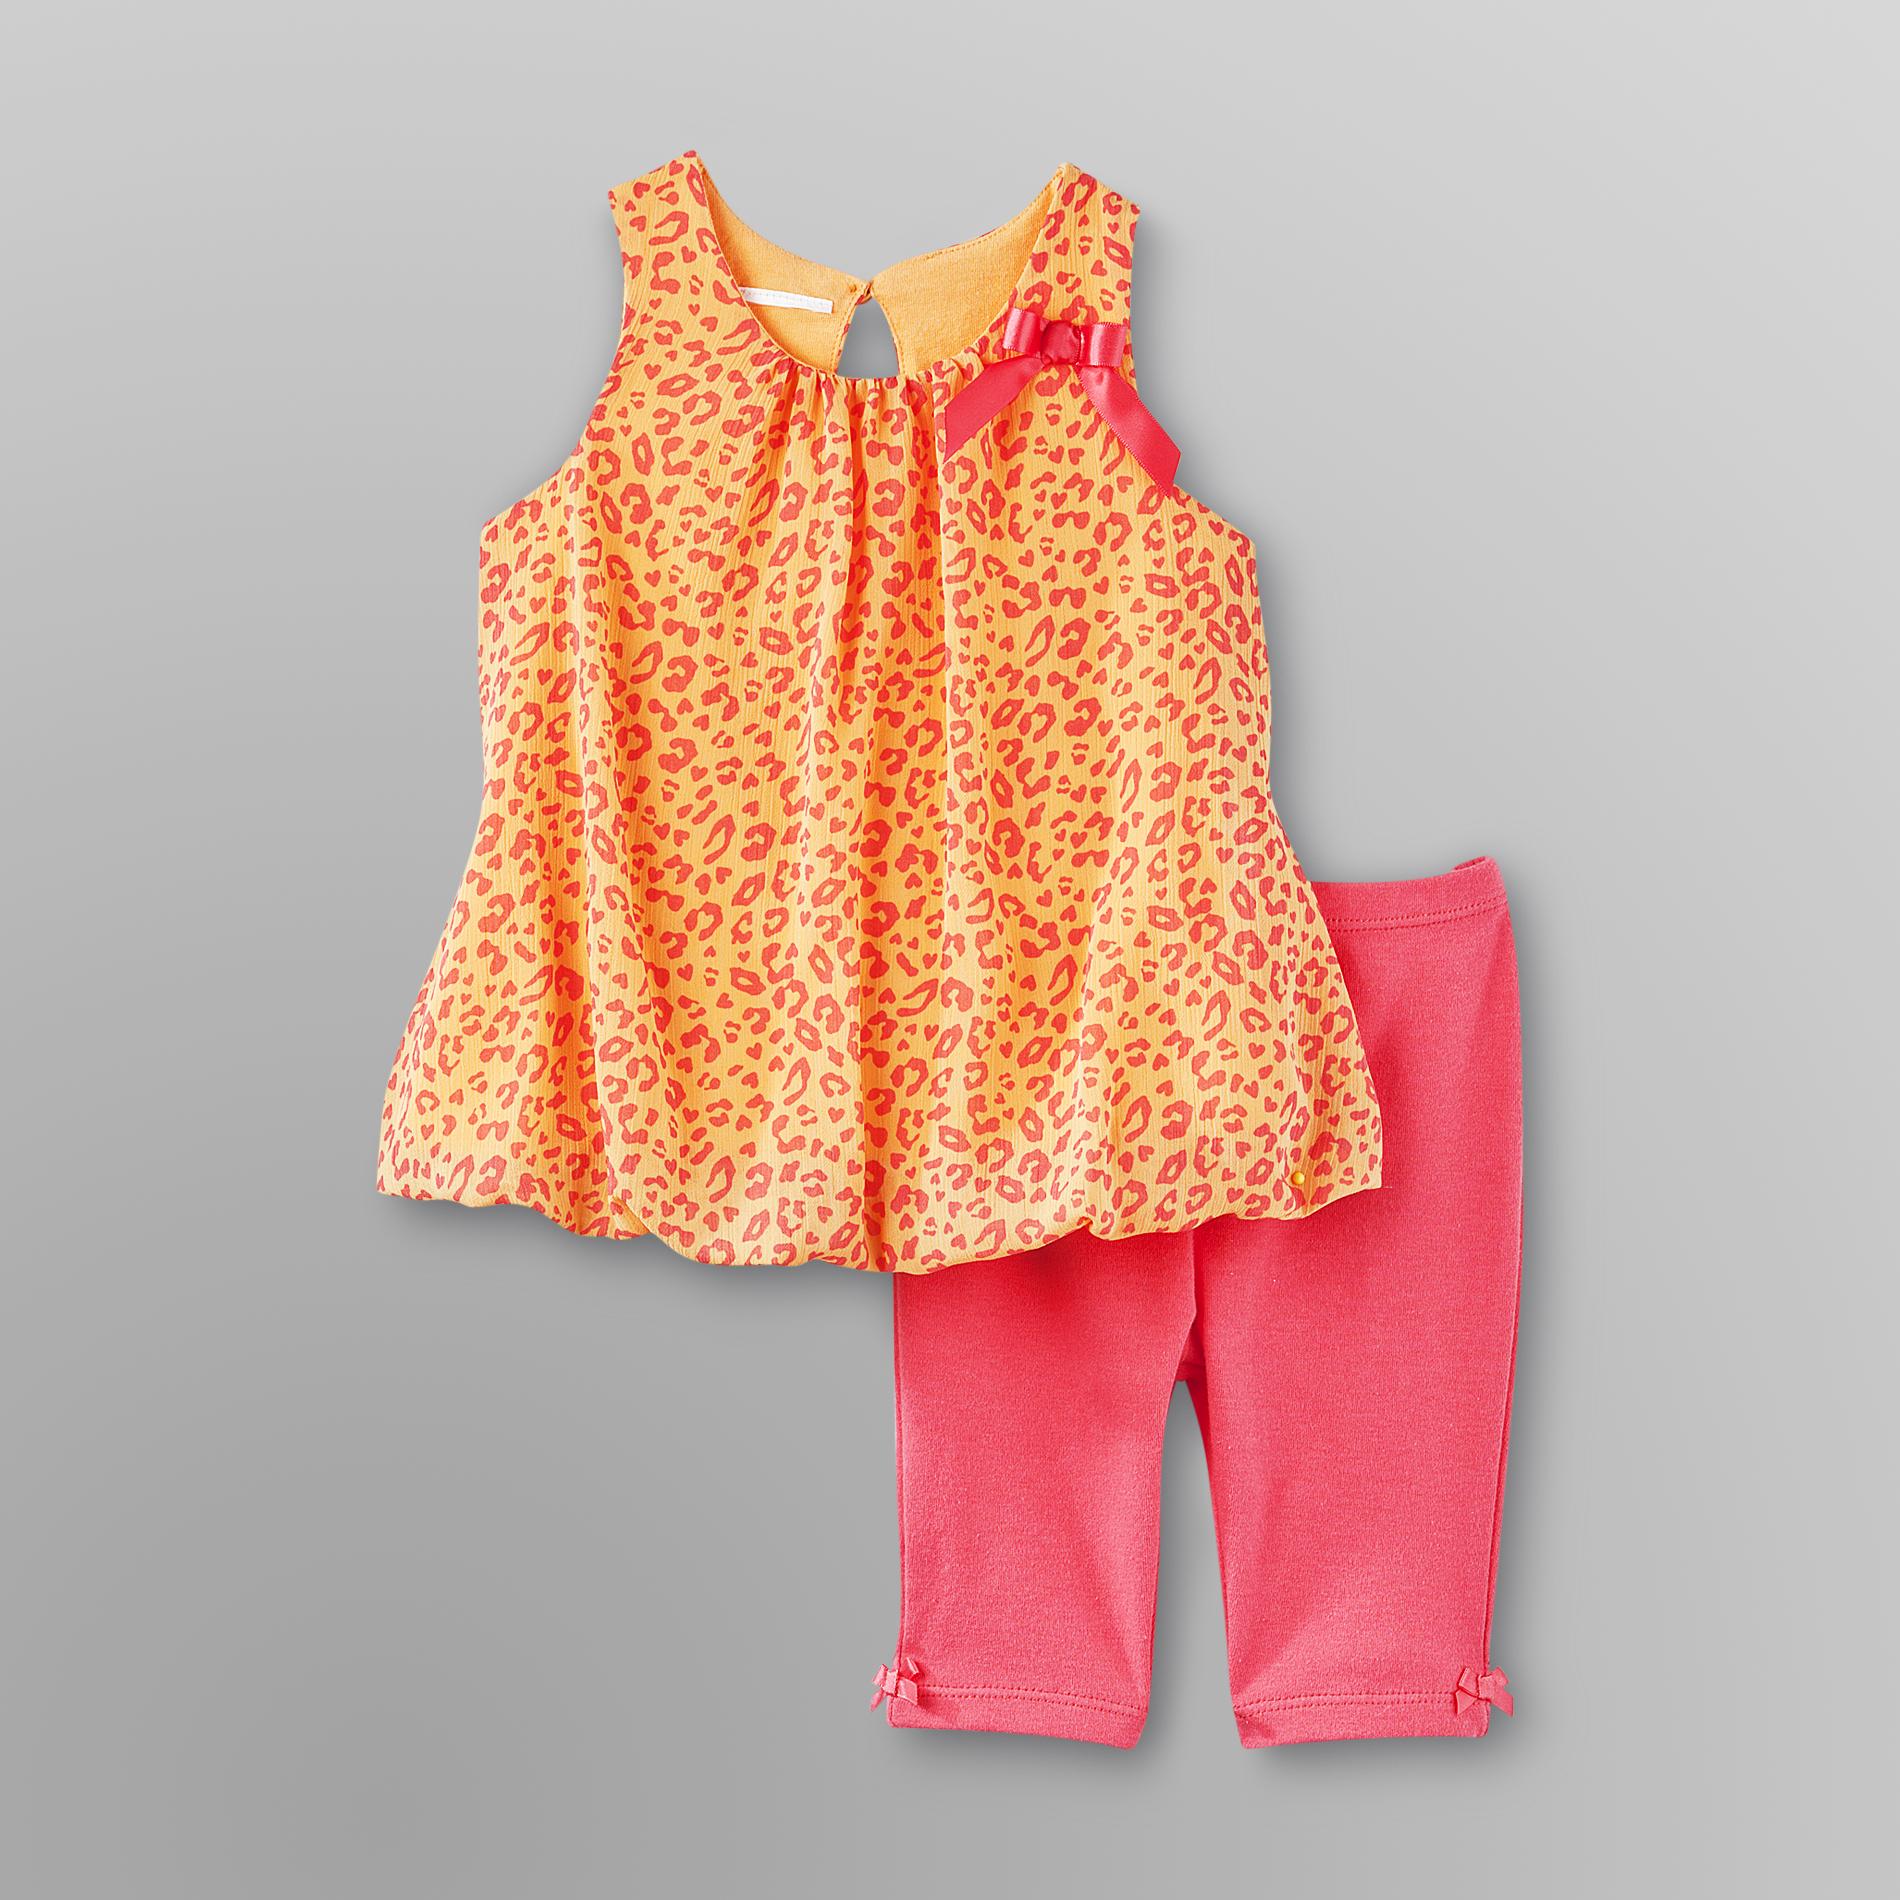 Small Wonders Infant Girl's Dress & Leggings - Leopard Print